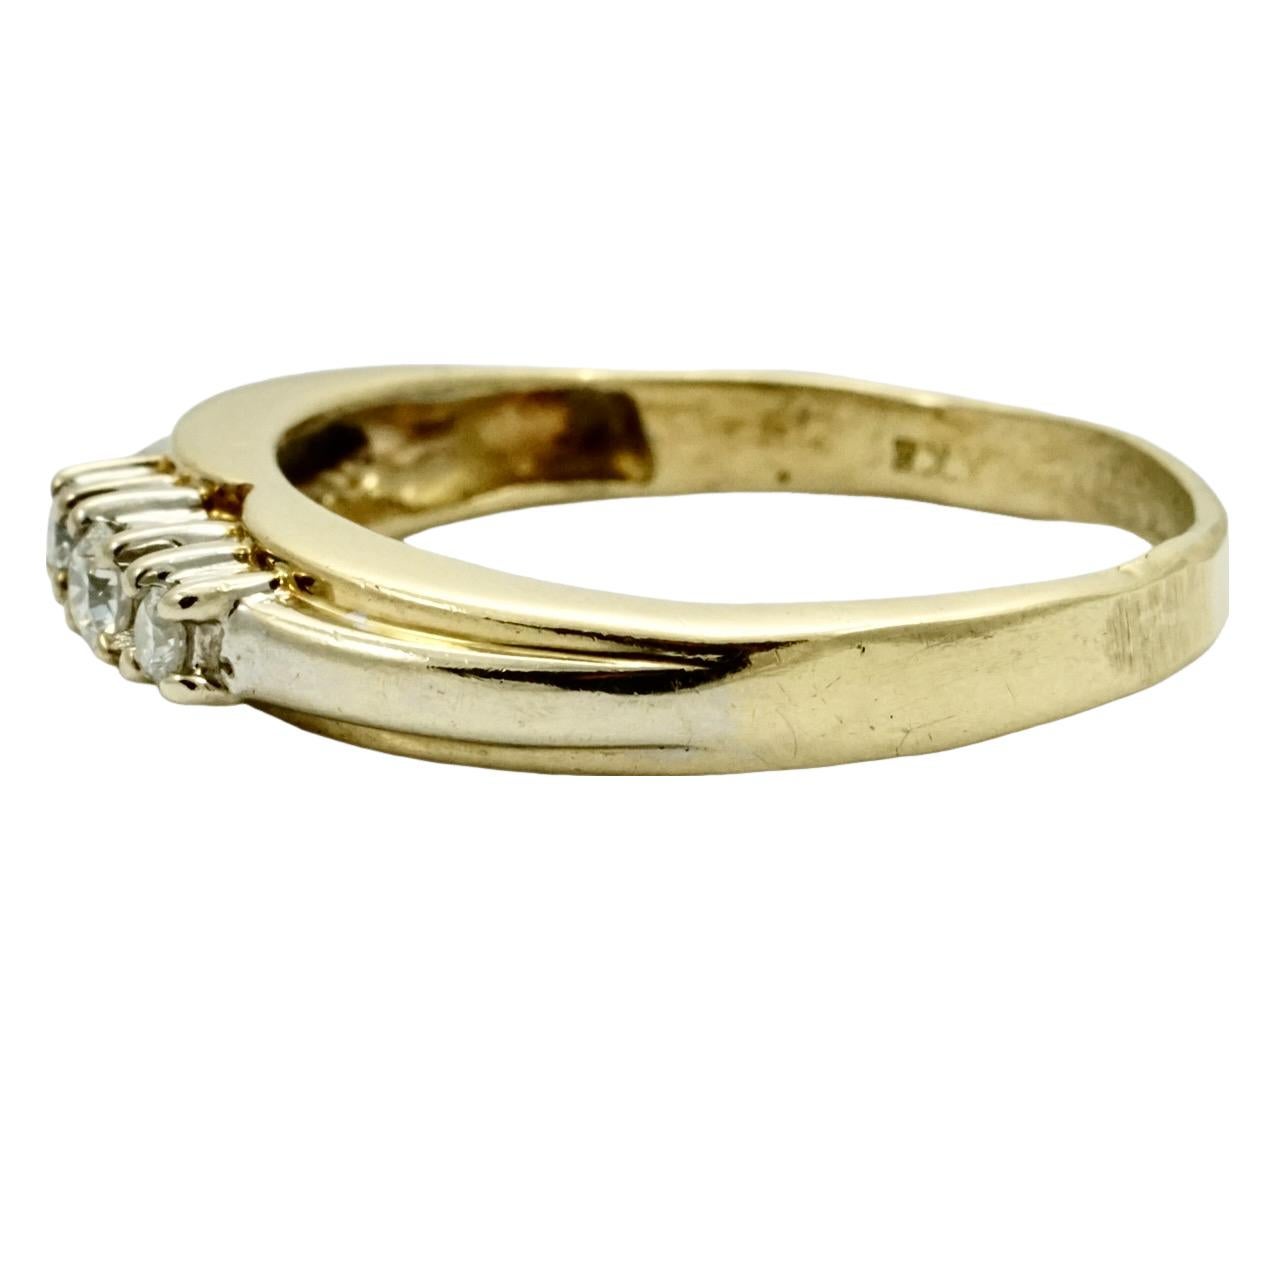 Schöner Dreistein-Diamantring aus 14 Karat Gelbgold und Weißgold, wobei das Weißgold die Diamanten und die Schultern hervorhebt. Ringgröße UK K, US 5 1/8,  Innendurchmesser 16,5 mm / .64 inch. Der Ring wurde möglicherweise in der Größe verändert, um